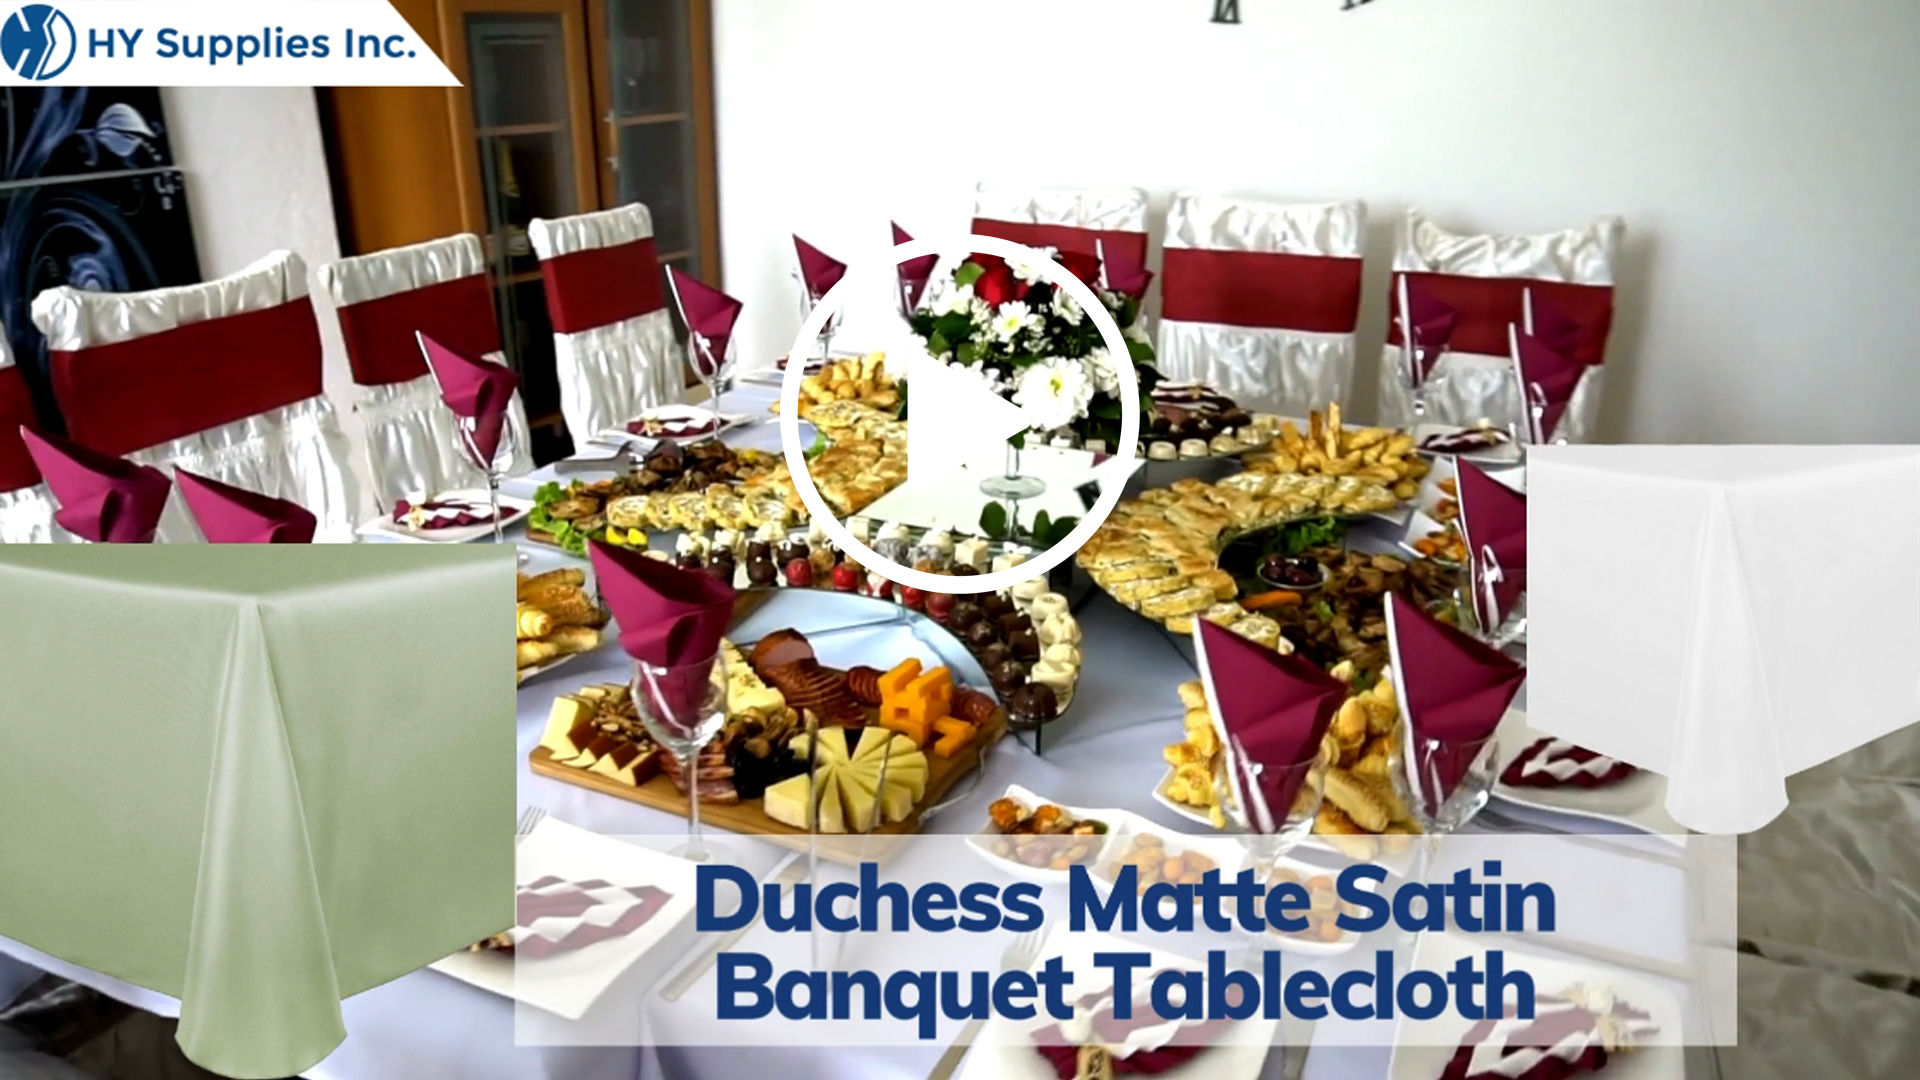 Duchess Matte Satin Banquet Tablecloth